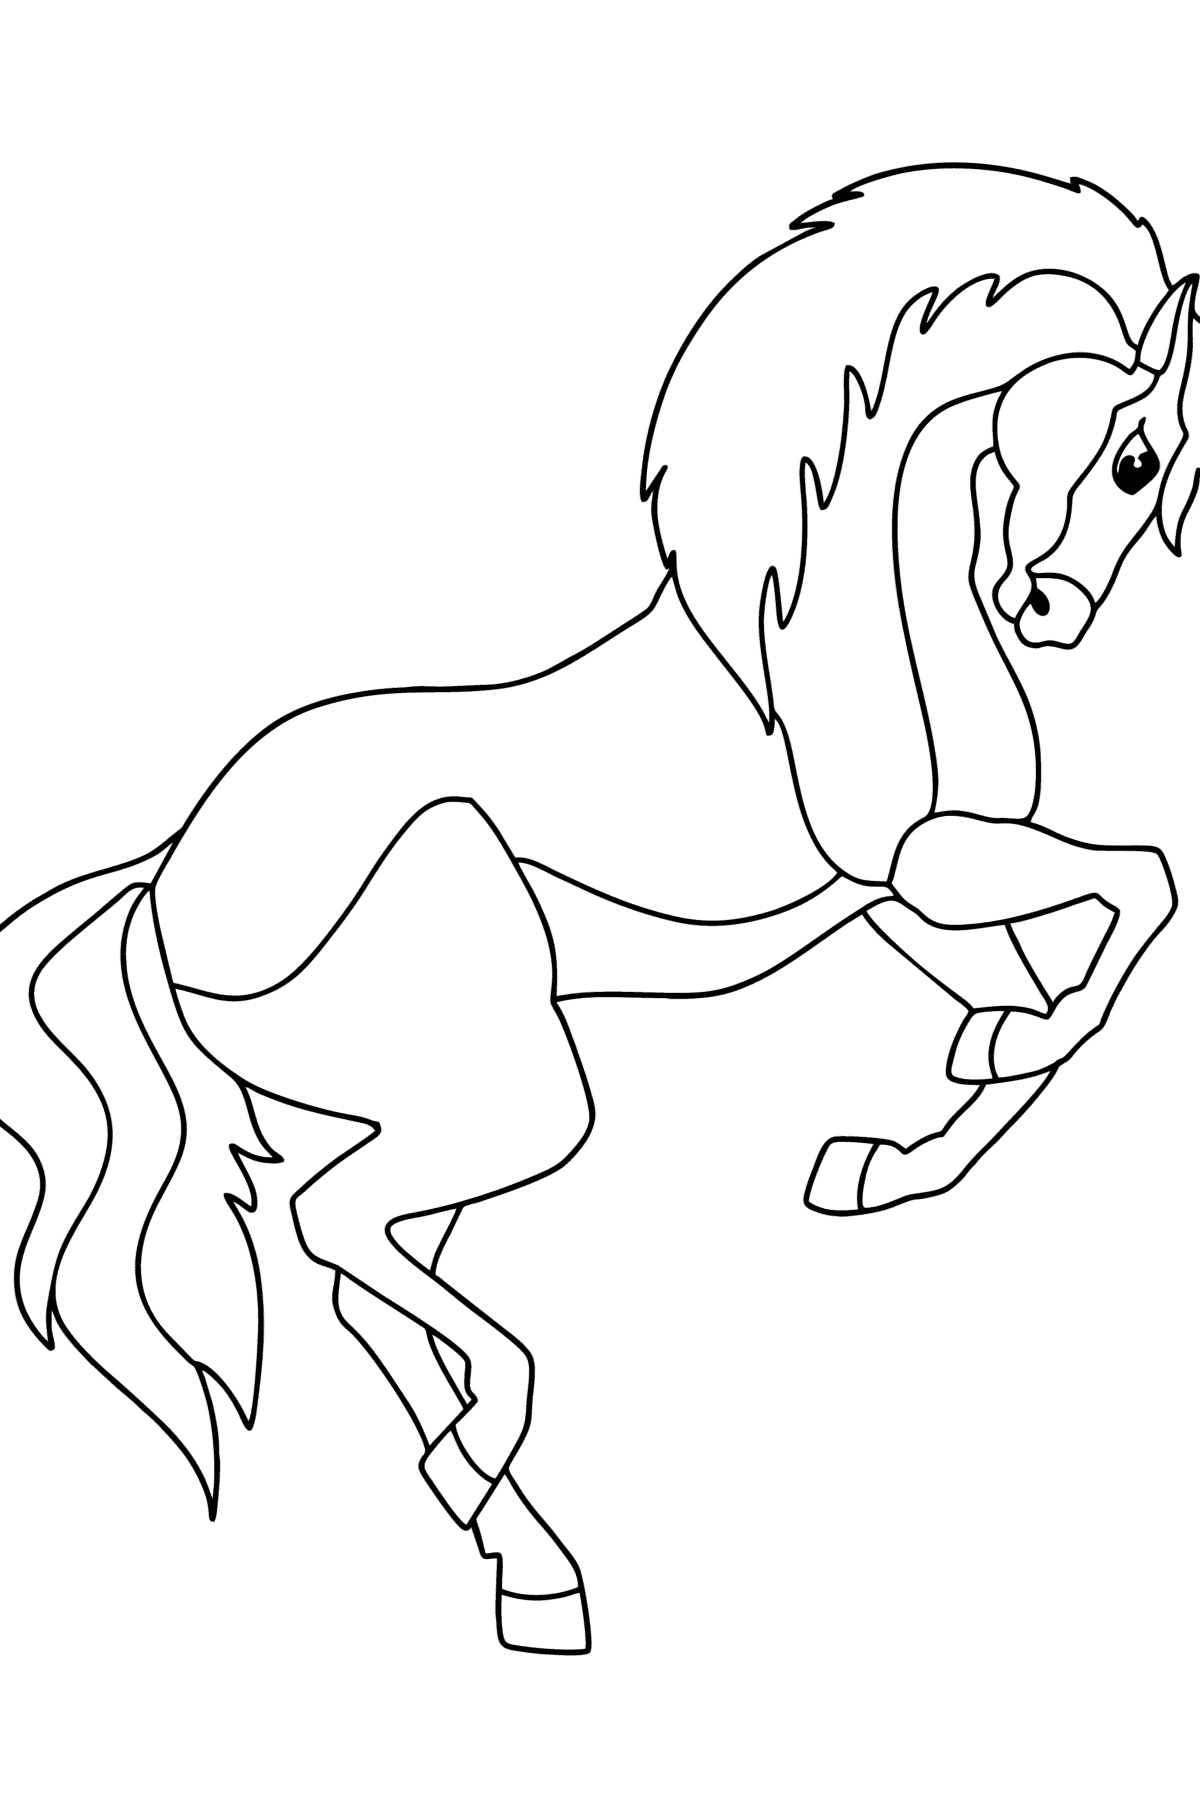 Tegning til fargelegging Mustang - Tegninger til fargelegging for barn